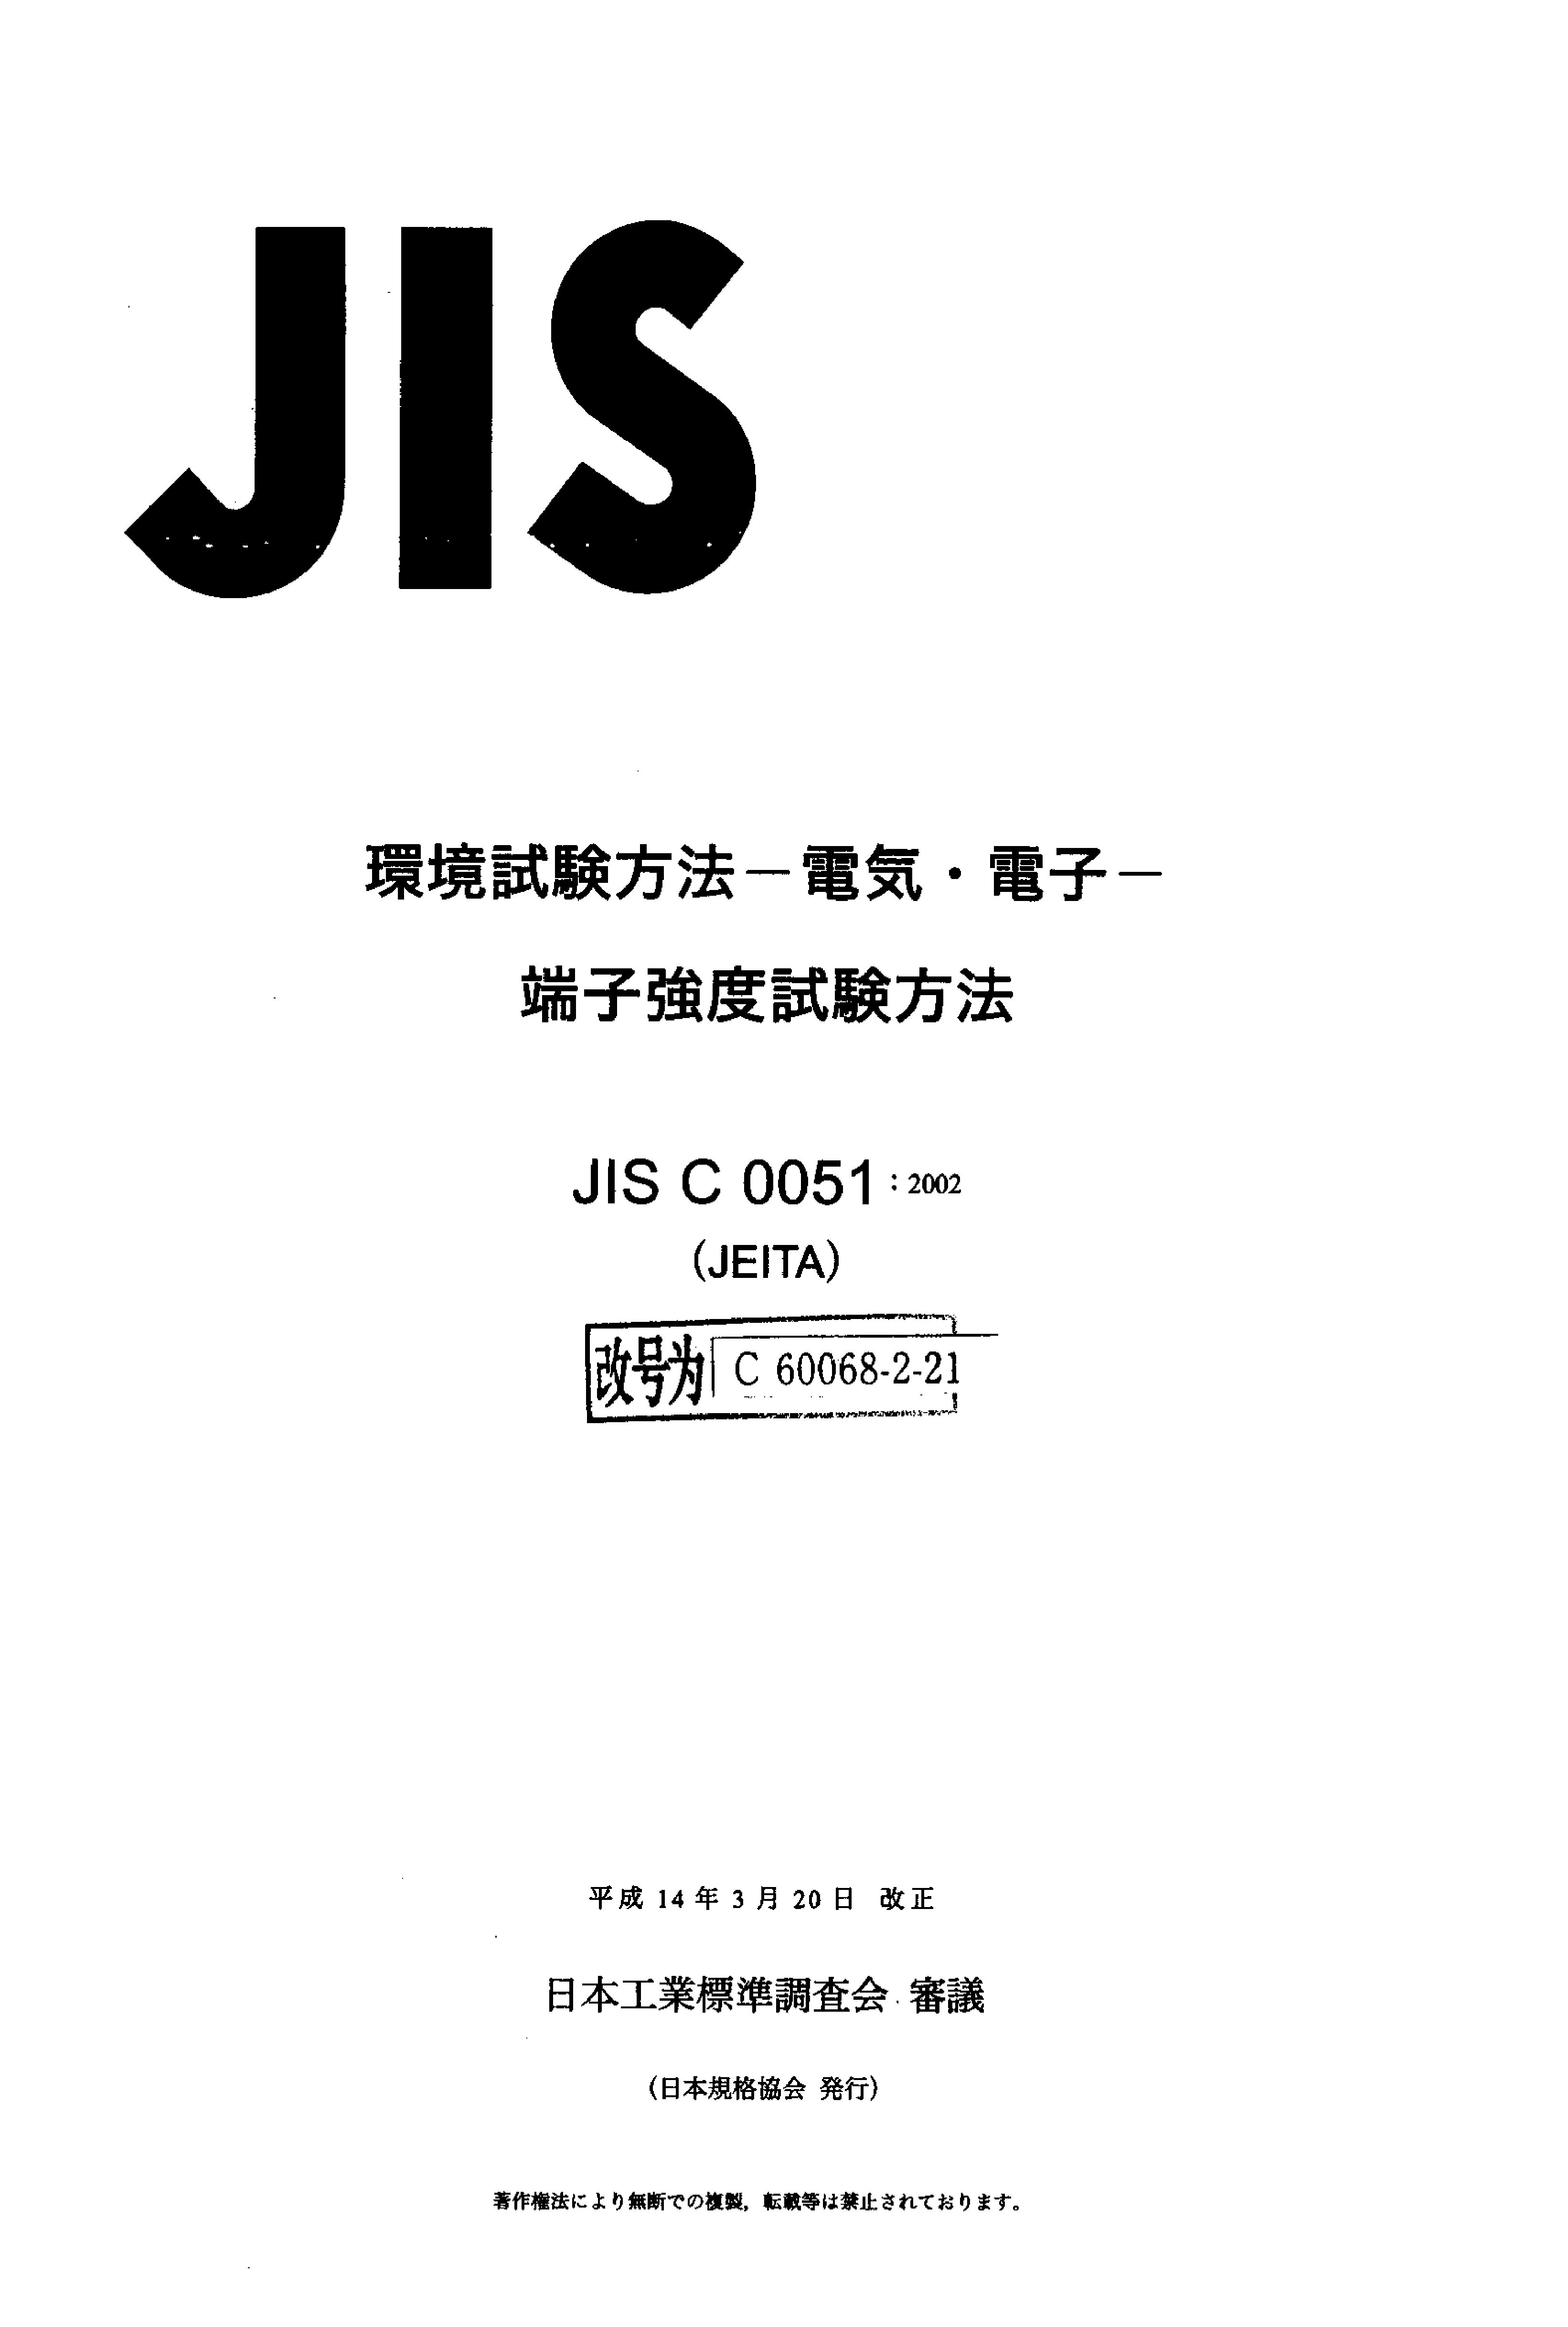 JIS C 60068-2-21:2002